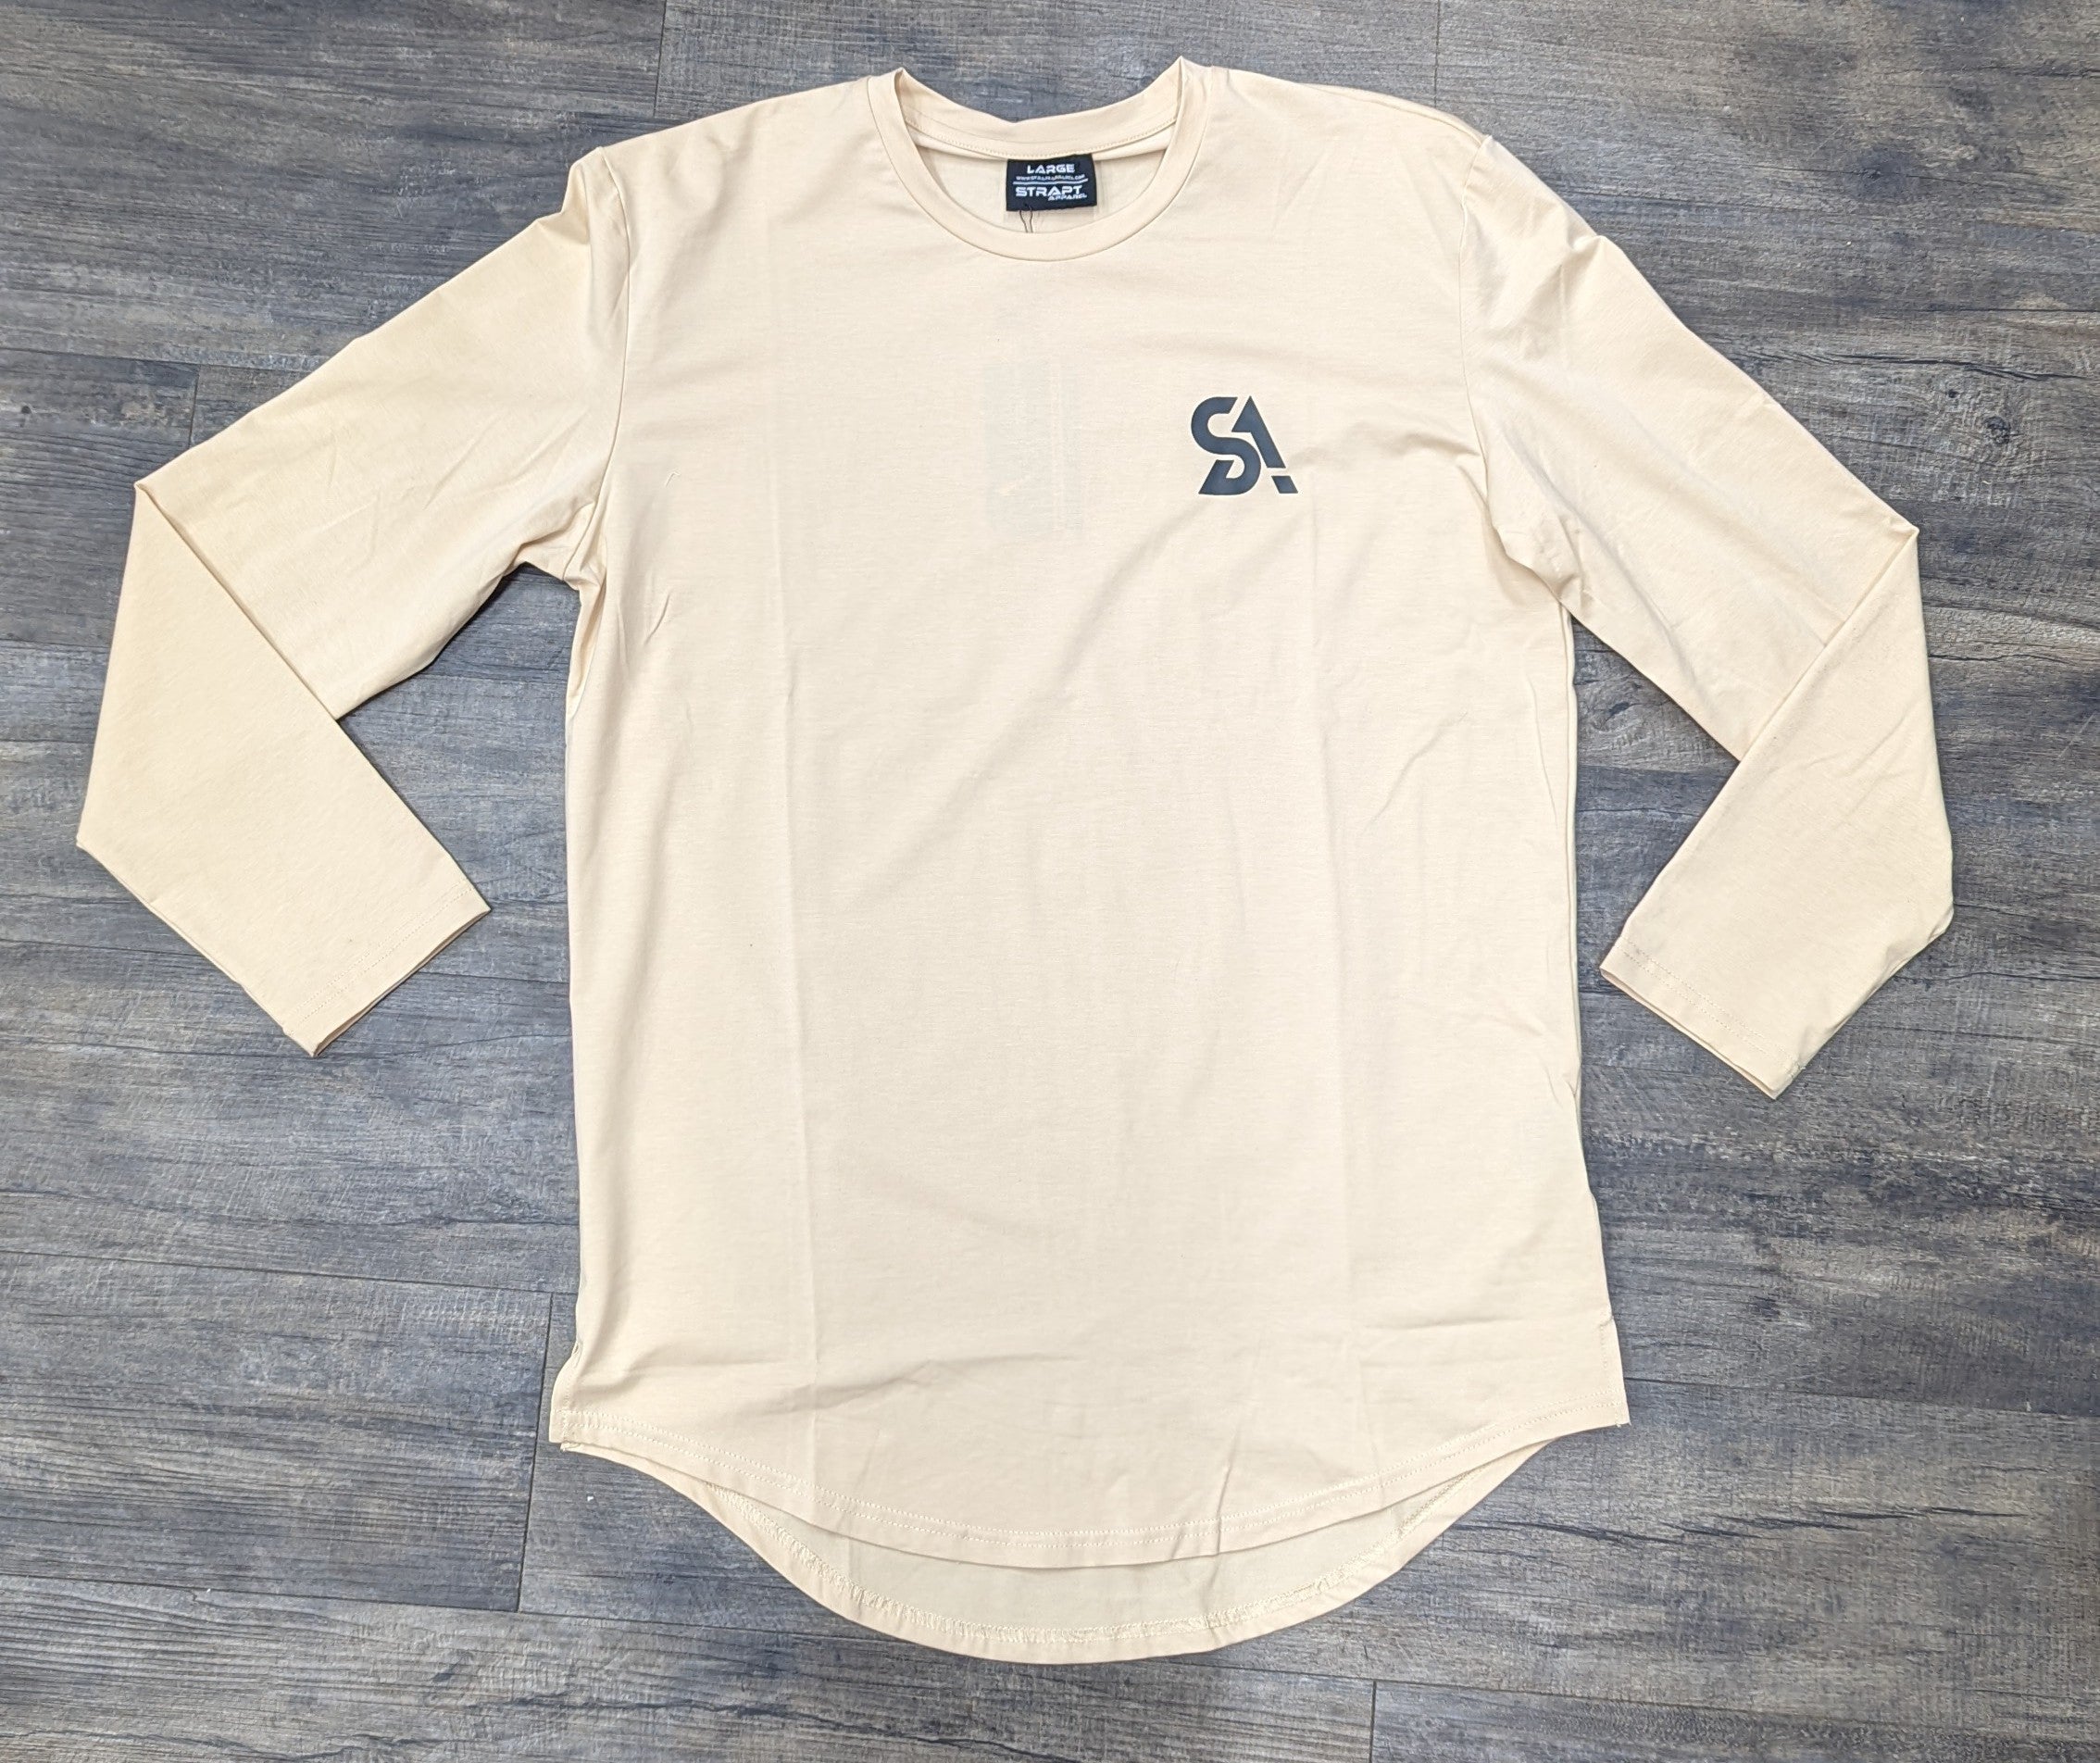 SA Exfil Long Sleeve Shirt